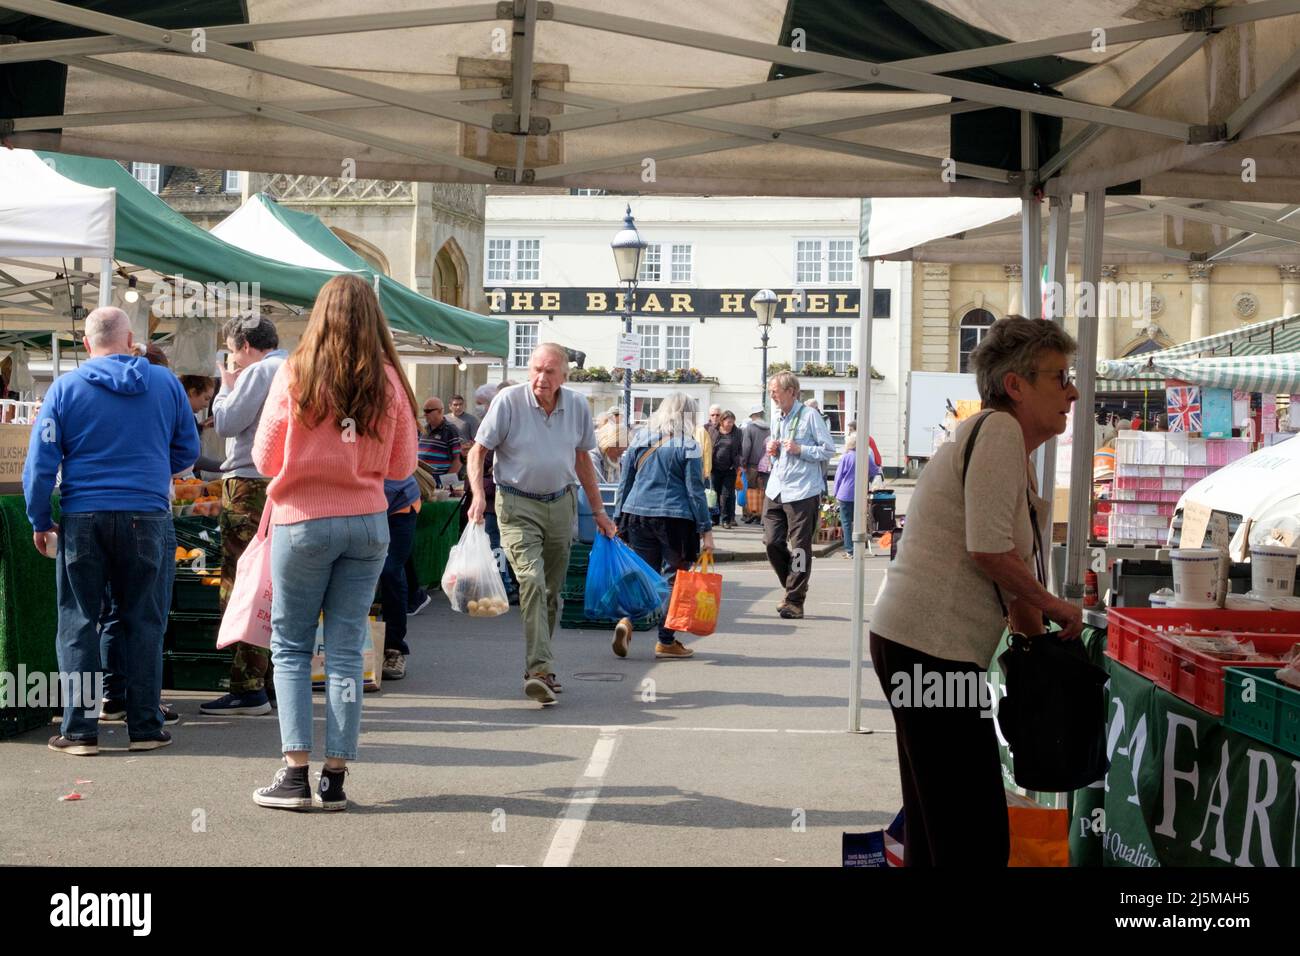 Devizes est une ville du marché de wiltshire. Un marché animé est tenu le jour de la semaine, l'hôtel Bear dans l'arrière-pays. Banque D'Images